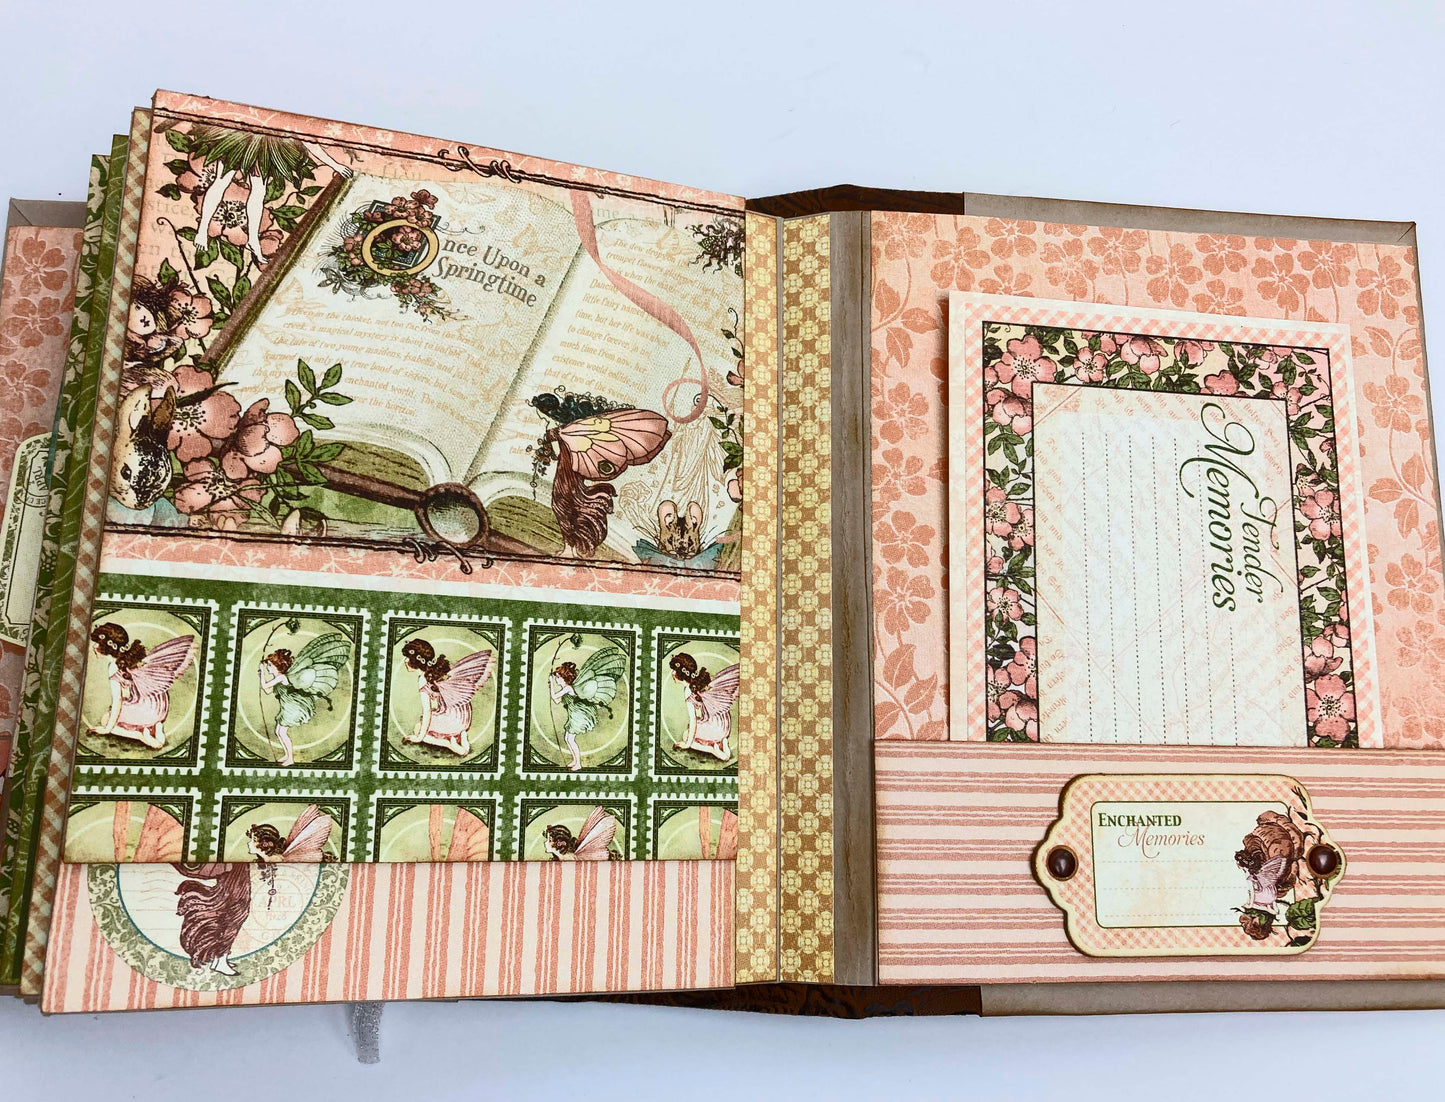 Fairy Cardmaker: Baby Girl Scrapbook Album XL